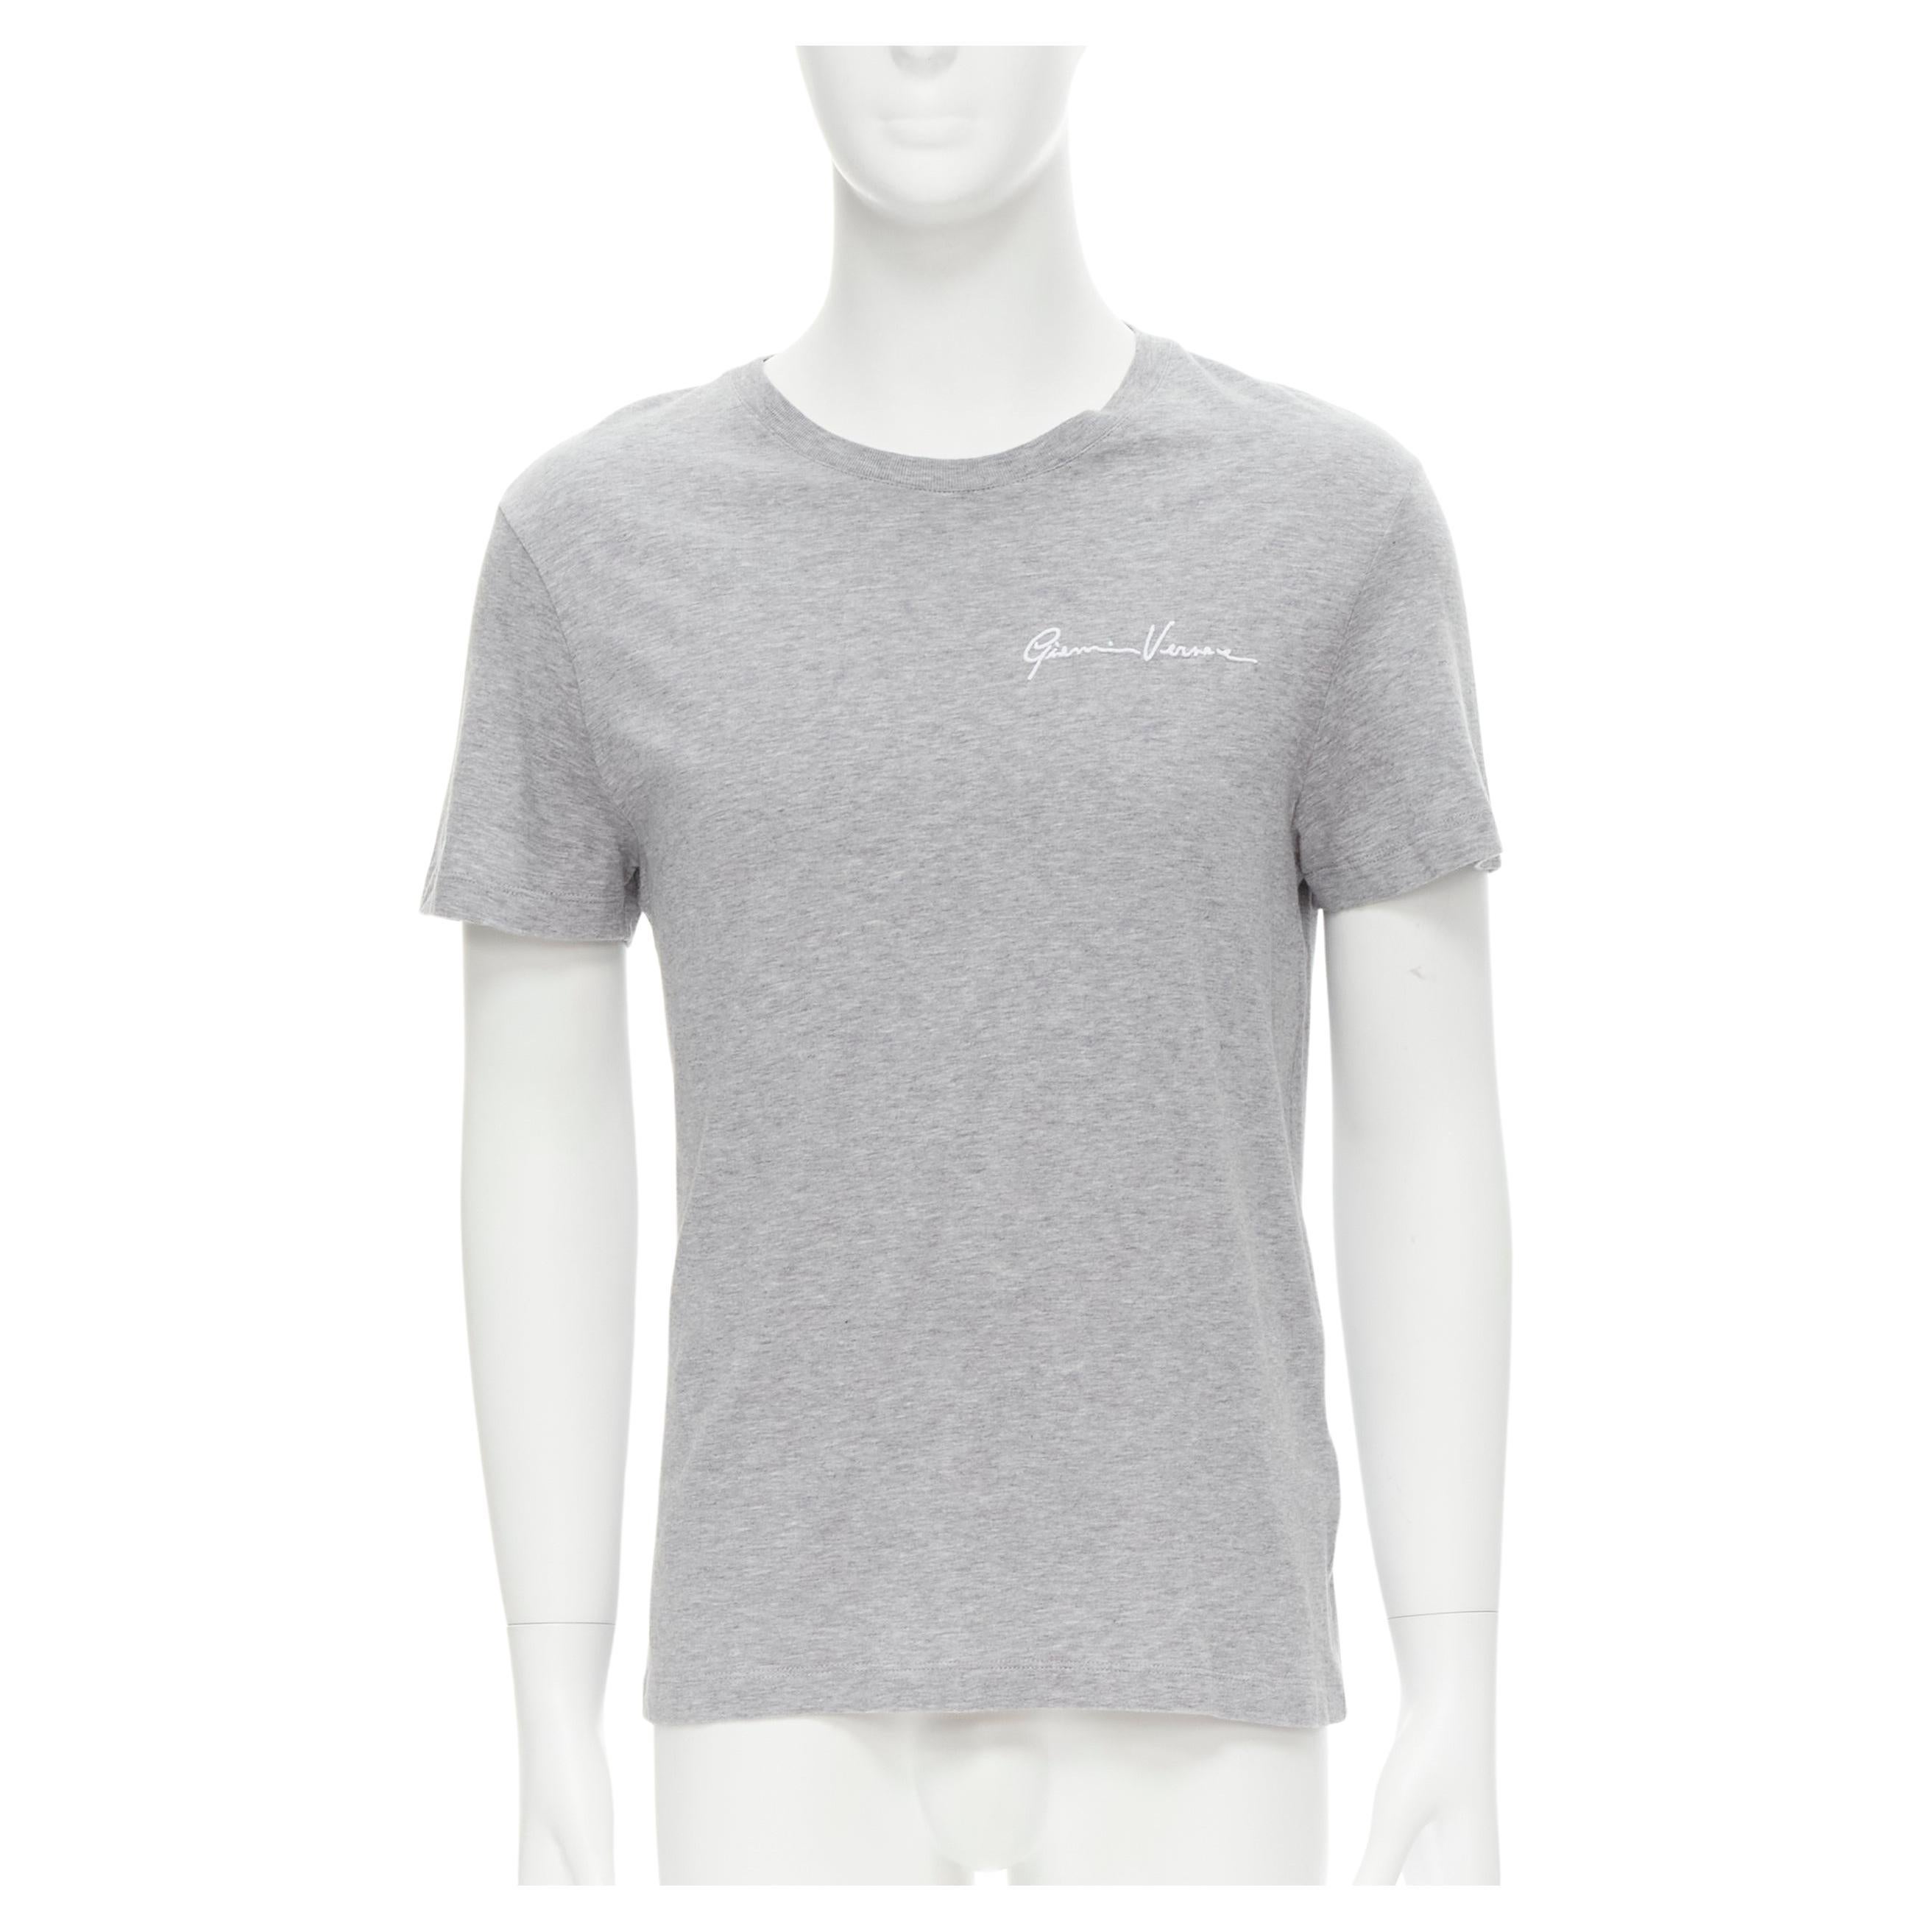 VERSACE - T-shirt gris blanc avec broderie du logo et signature Gianni, taille S en vente